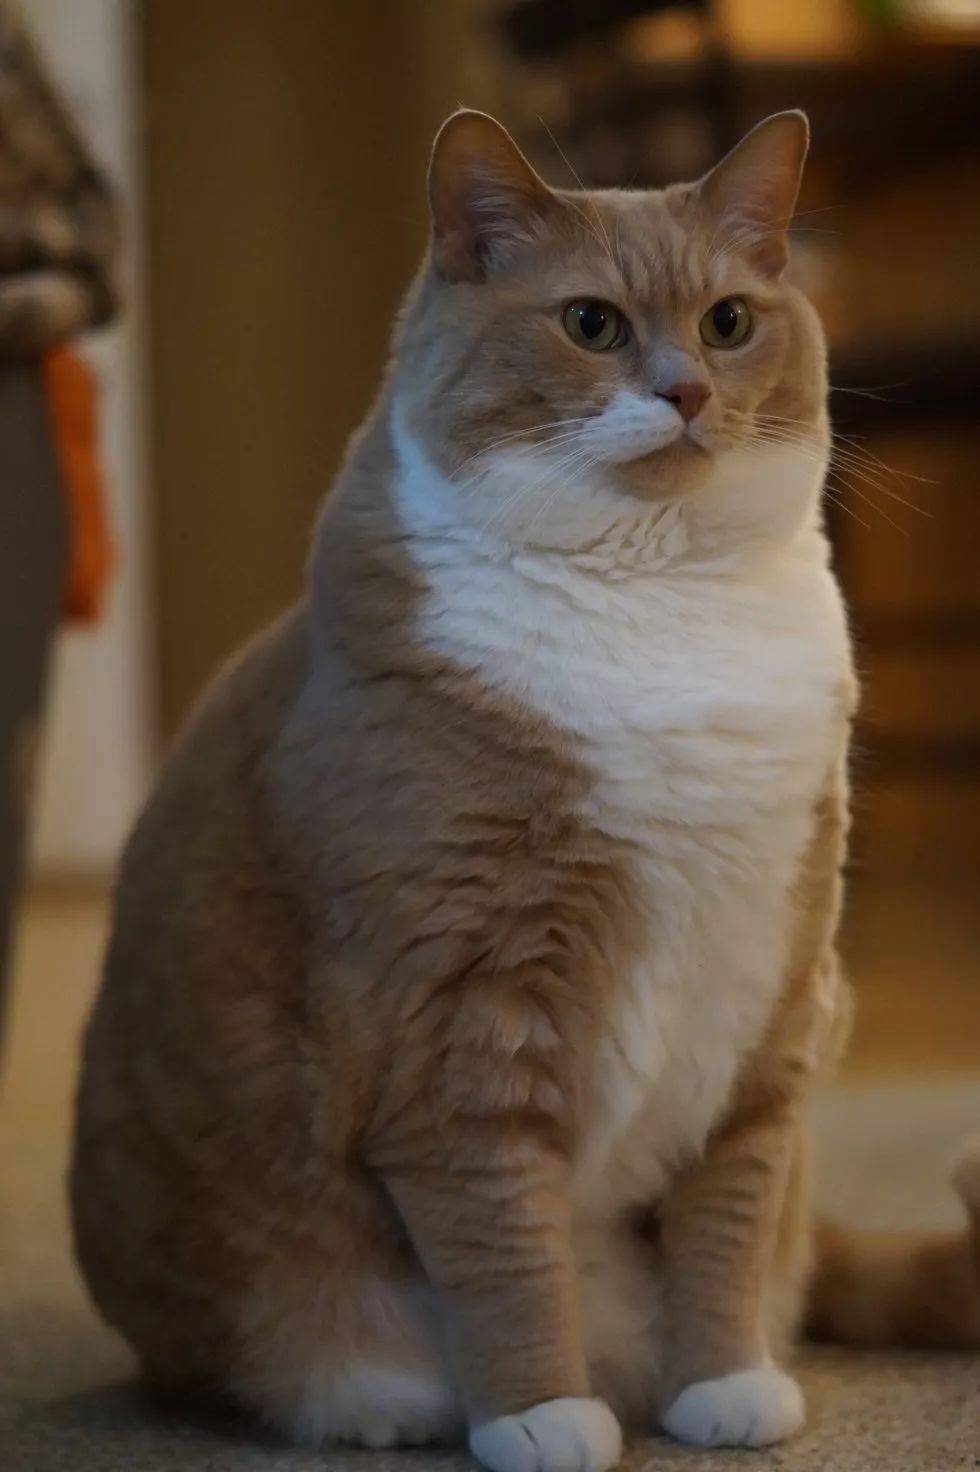 捡到一只胖成球的猫怎么办?当然是帮它减肥啊!